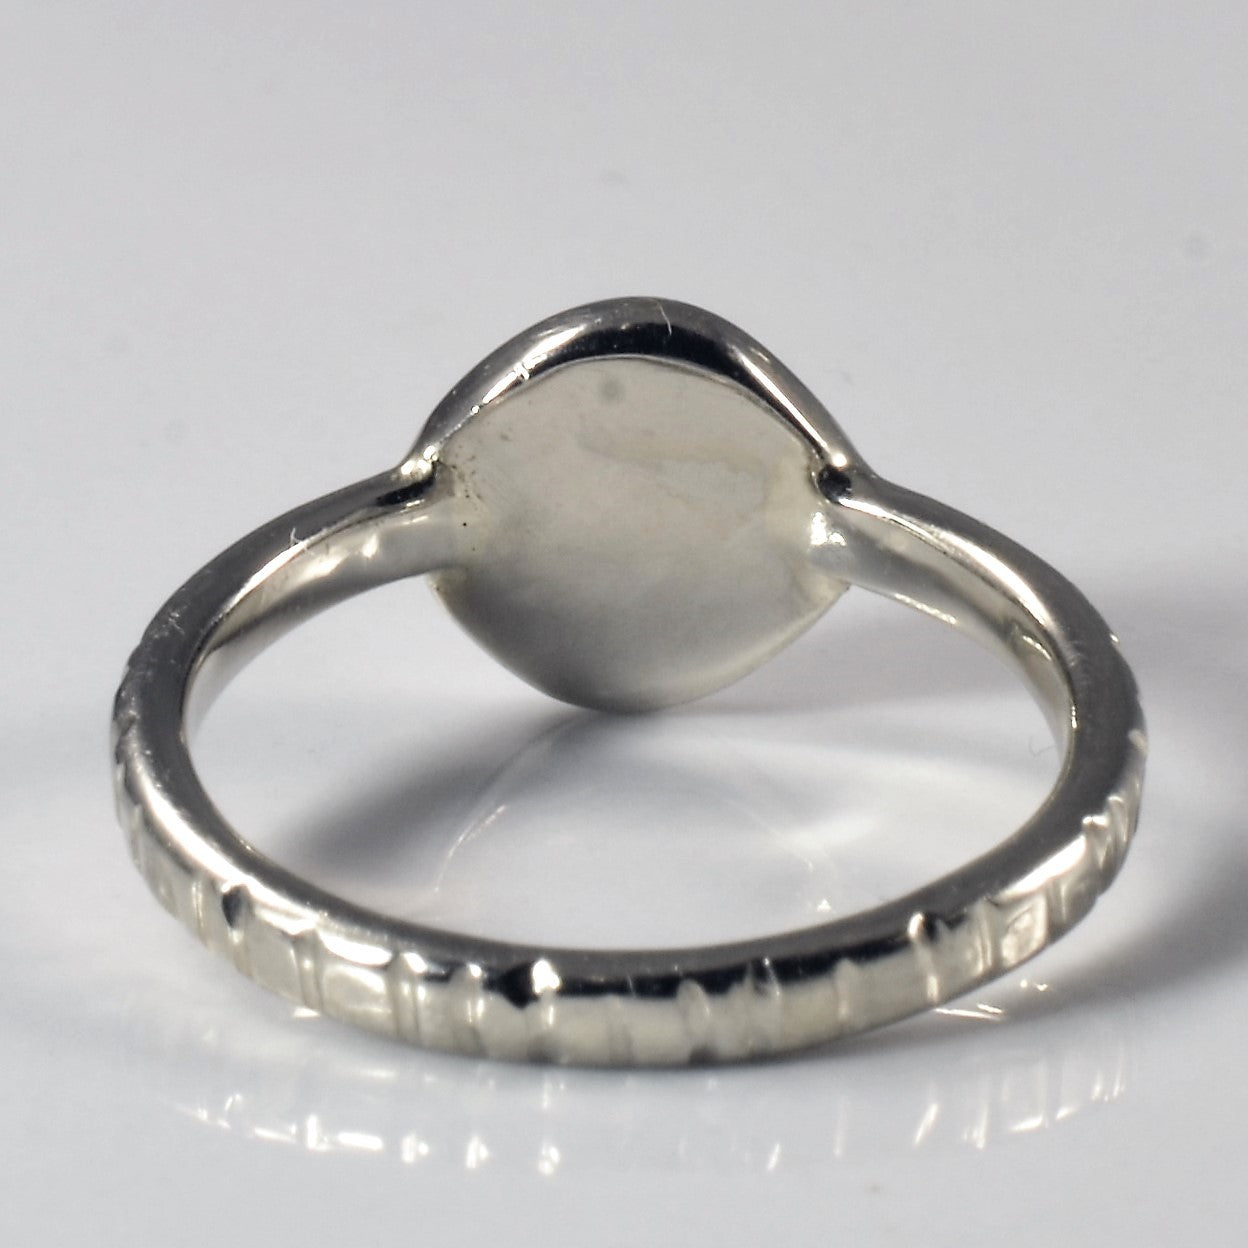 Misty Gray Rose Cut Diamond Ring | 1.04ctw | SZ 5.5 |